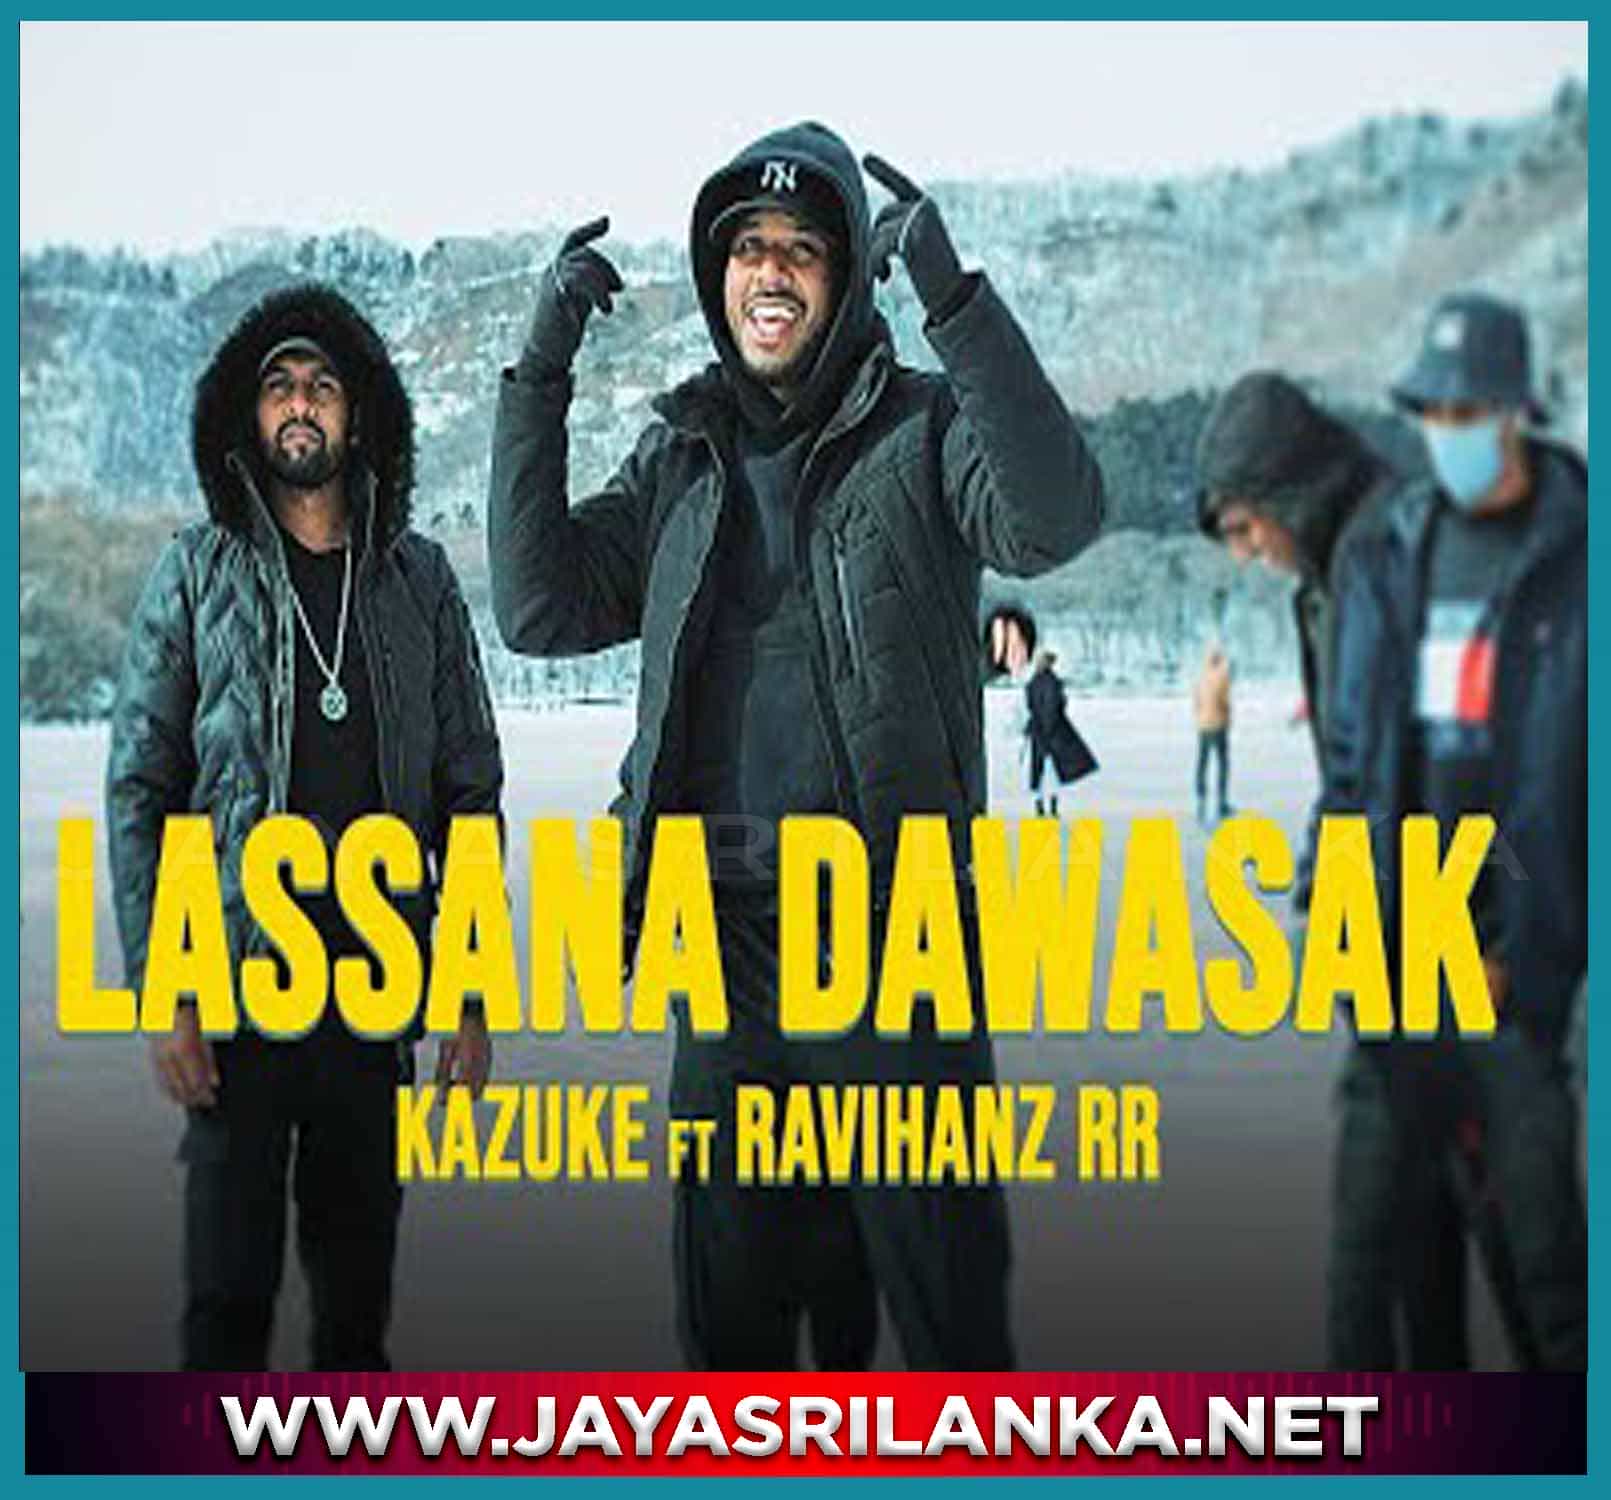 Lassana Dawasak